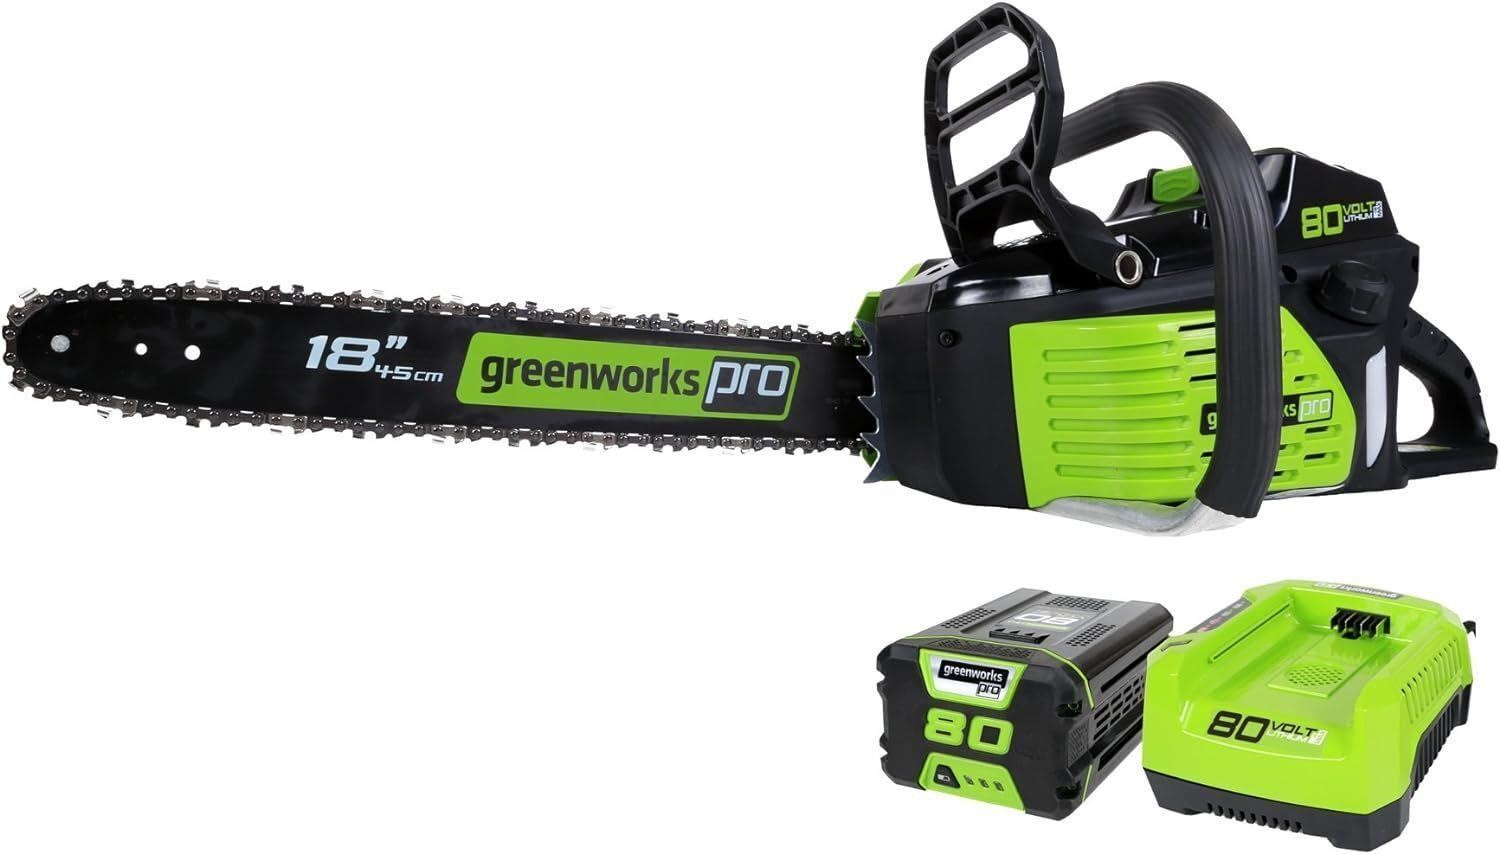 Greenworks 80V 18" Brushless Cordless Chainsaw